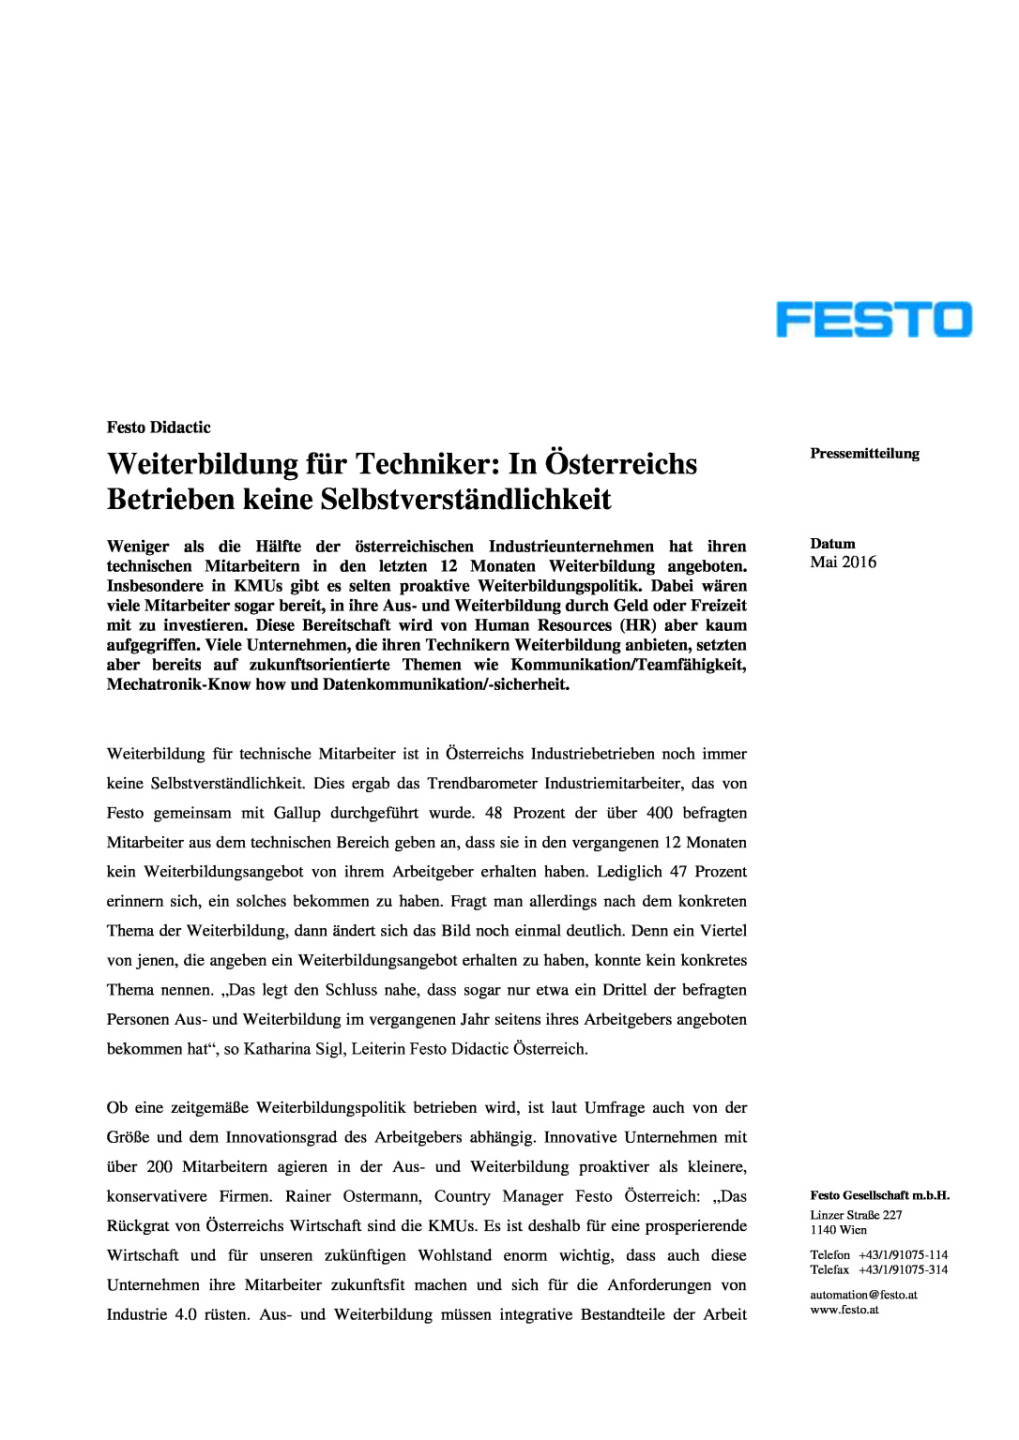 Festo Didactic: Weiterbildung für Techniker, Seite 1/3, komplettes Dokument unter http://boerse-social.com/static/uploads/file_1010_festo_didactic_weiterbildung_fur_techniker.pdf